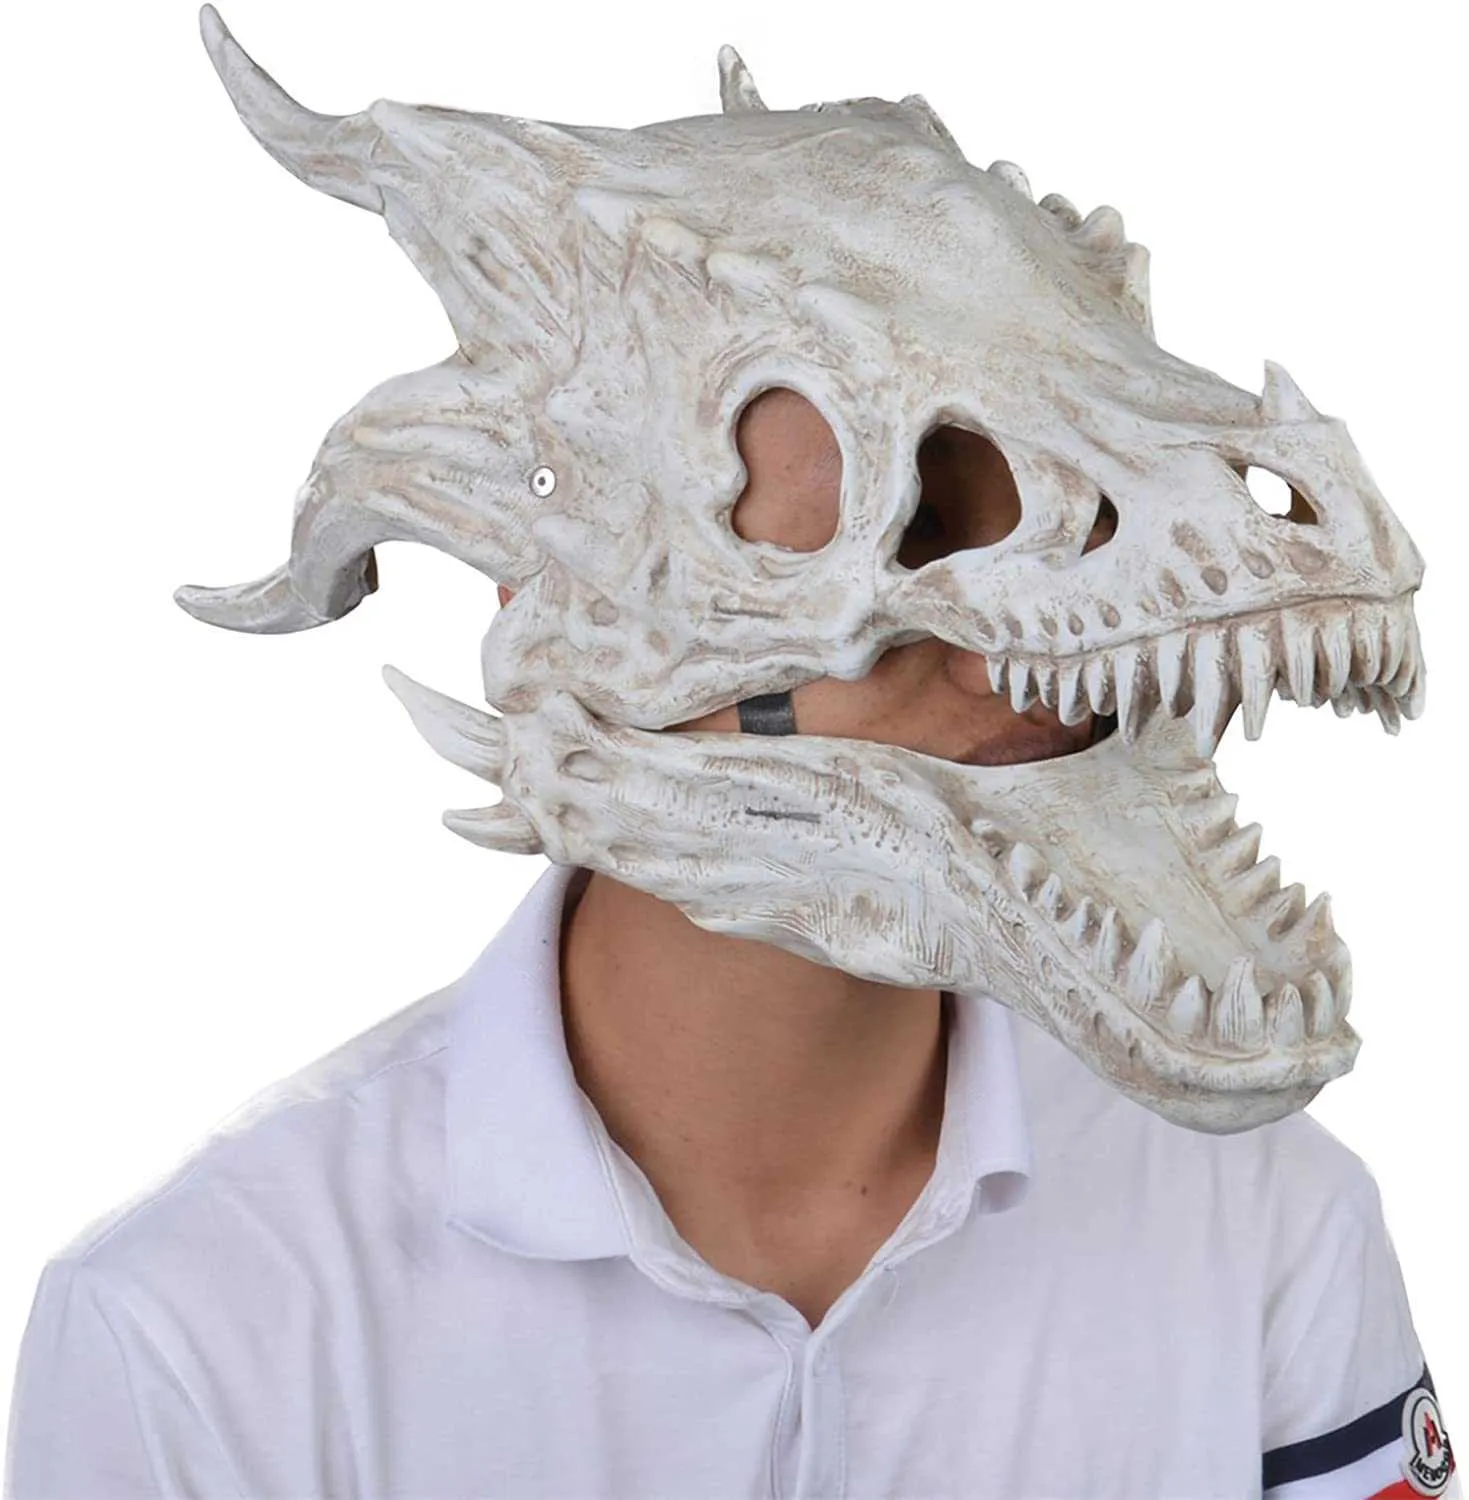 2021 Nuovo Dragon Mask Dragon Mobile / Mobile Jaw Dino Mask Moving Jaw Dinosaur Decor Mask per Party Halloween Decorazione di compleanno X0803